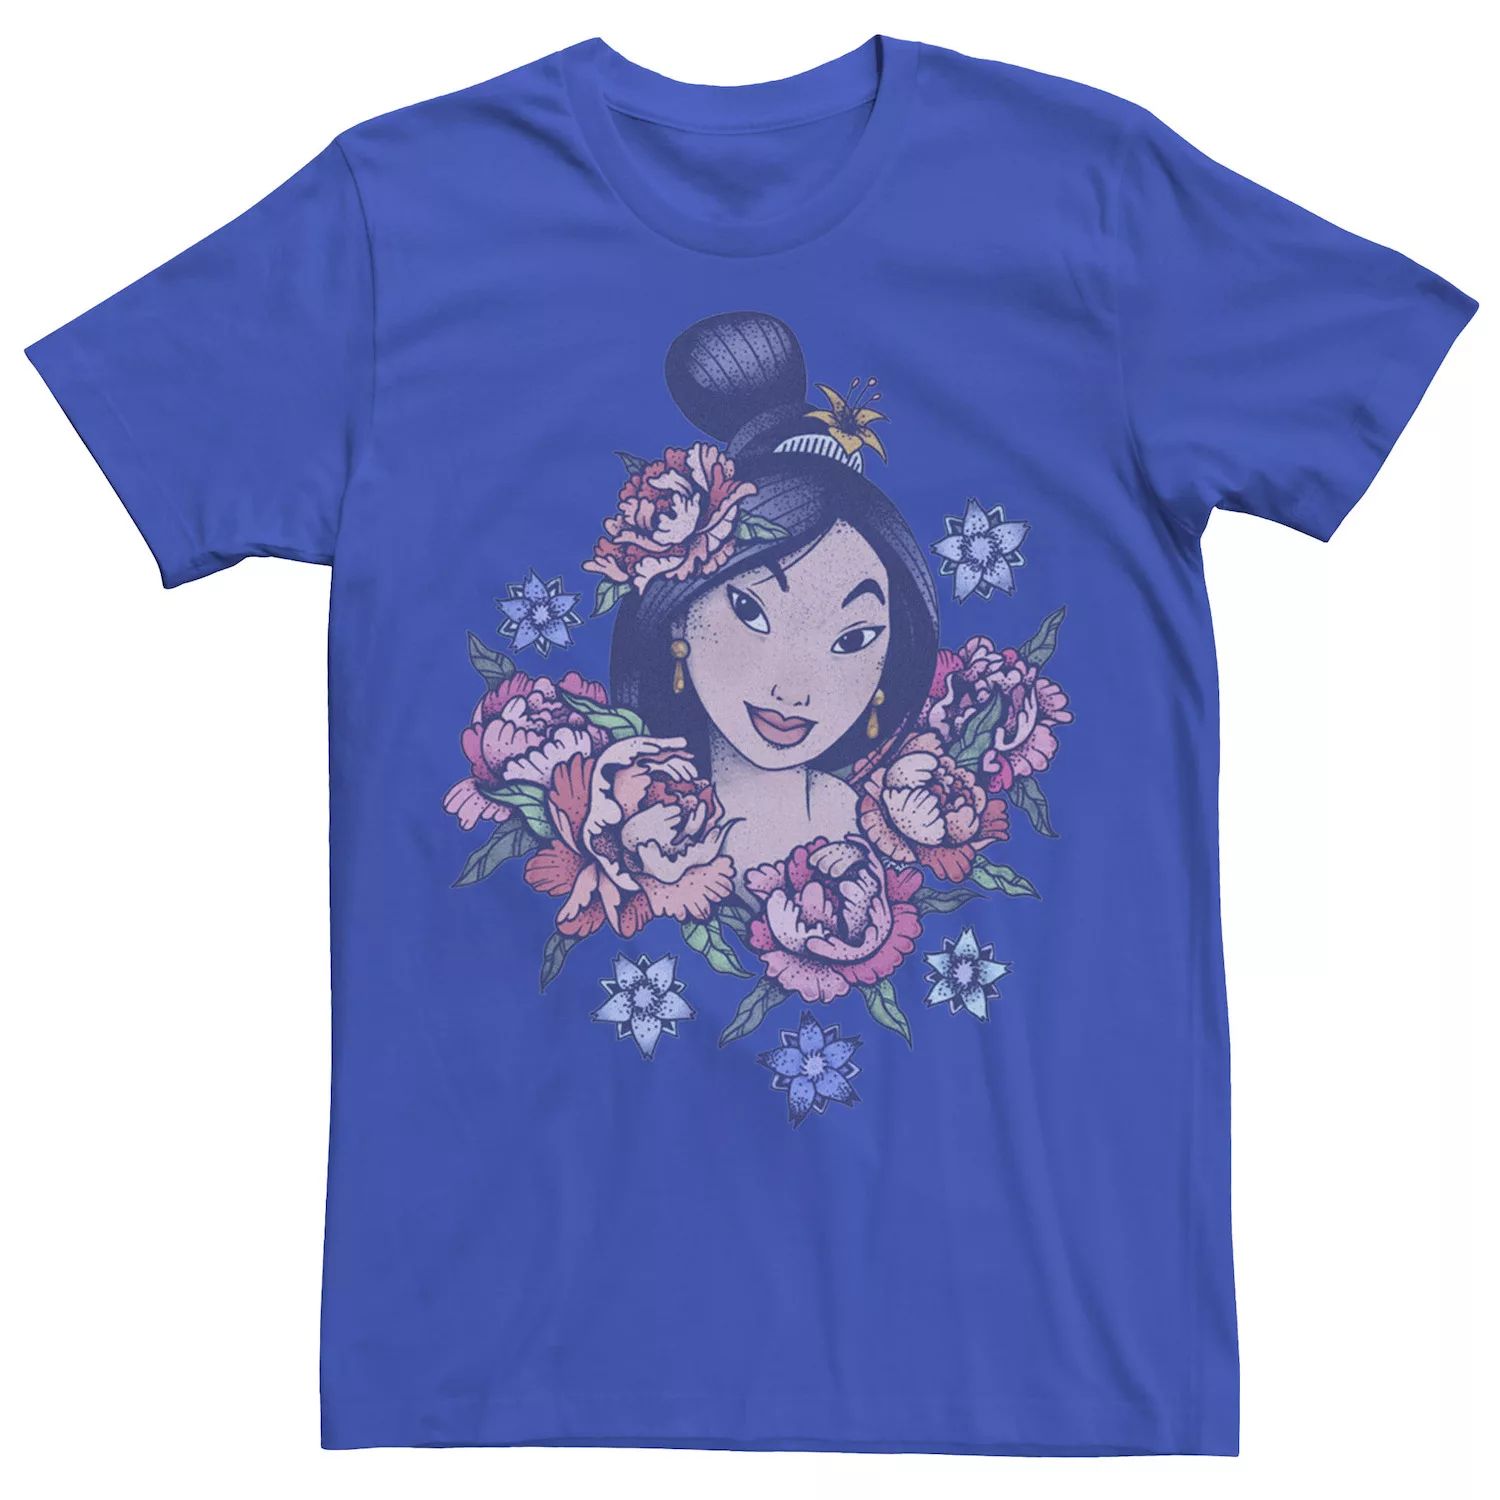 Мужская винтажная футболка Mulan с цветочным портретом и портретом Disney